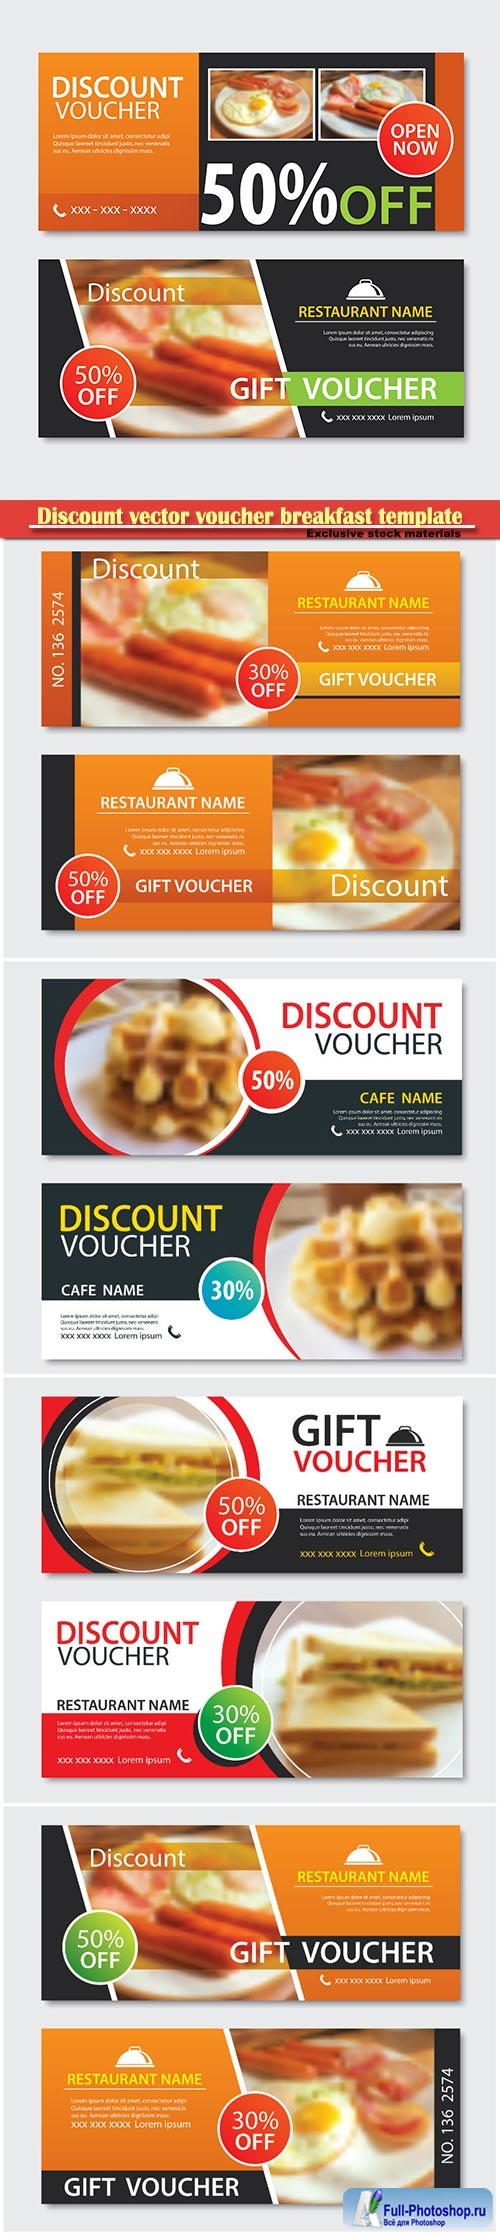 Discount vector voucher breakfast template design